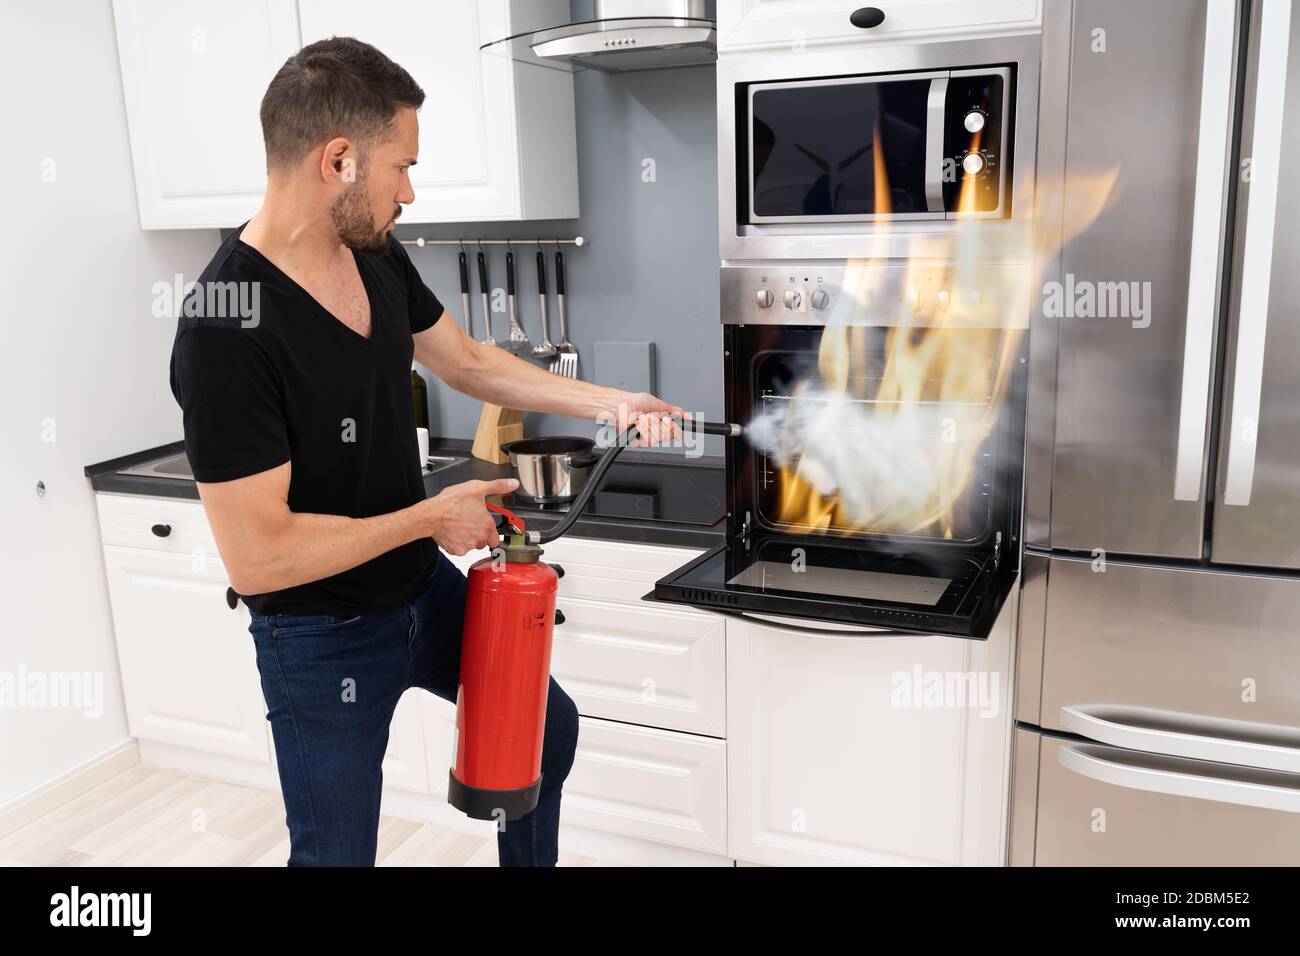 https://c8.alamy.com/compit/2dbm5e2/uomo-che-usa-estintore-per-mettere-fuori-fuoco-dal-forno-a-casa-2dbm5e2.jpg